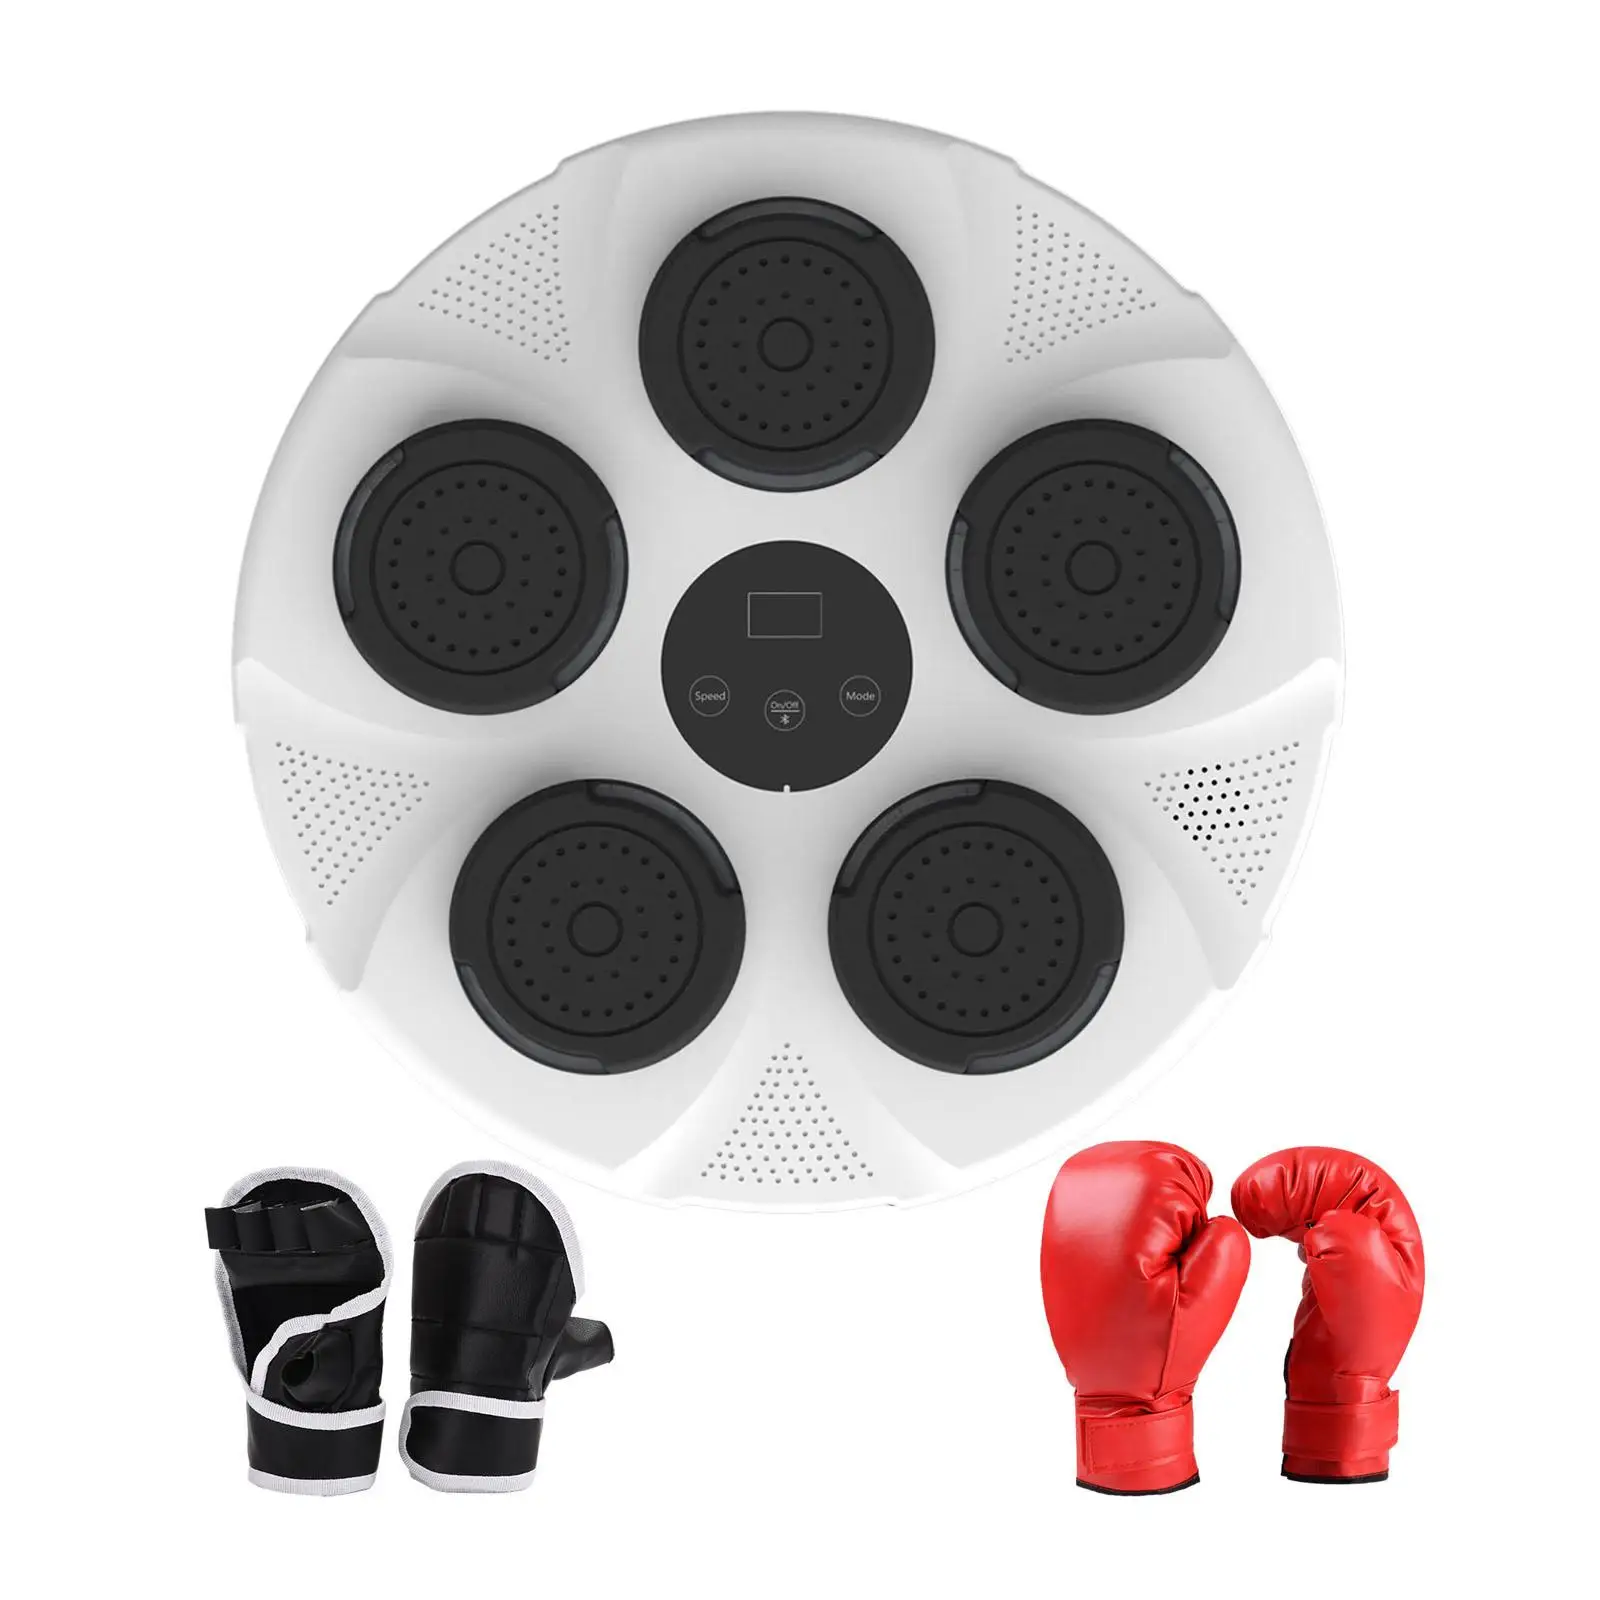 Music Box Stroj s Počítanie Funkcie Nastaviteľné Music Box Cieľ pre Zameranie Sanda Taekwondo Bojových Umení Domáce Vnútorné3